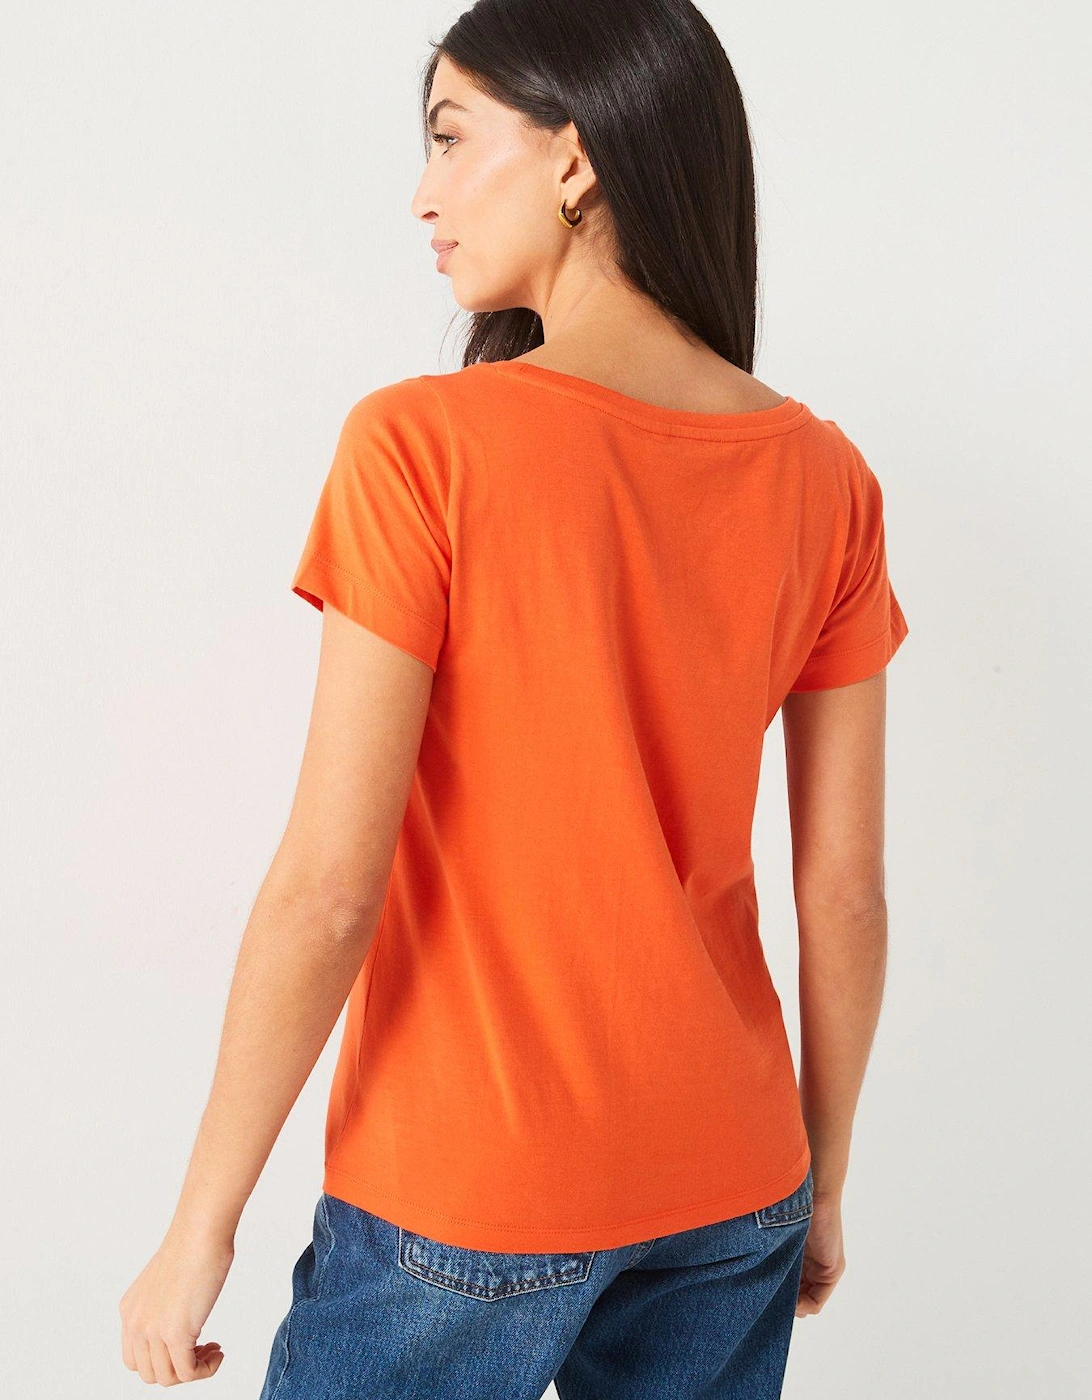 The Essential Scoop Neck T-shirt - Orange